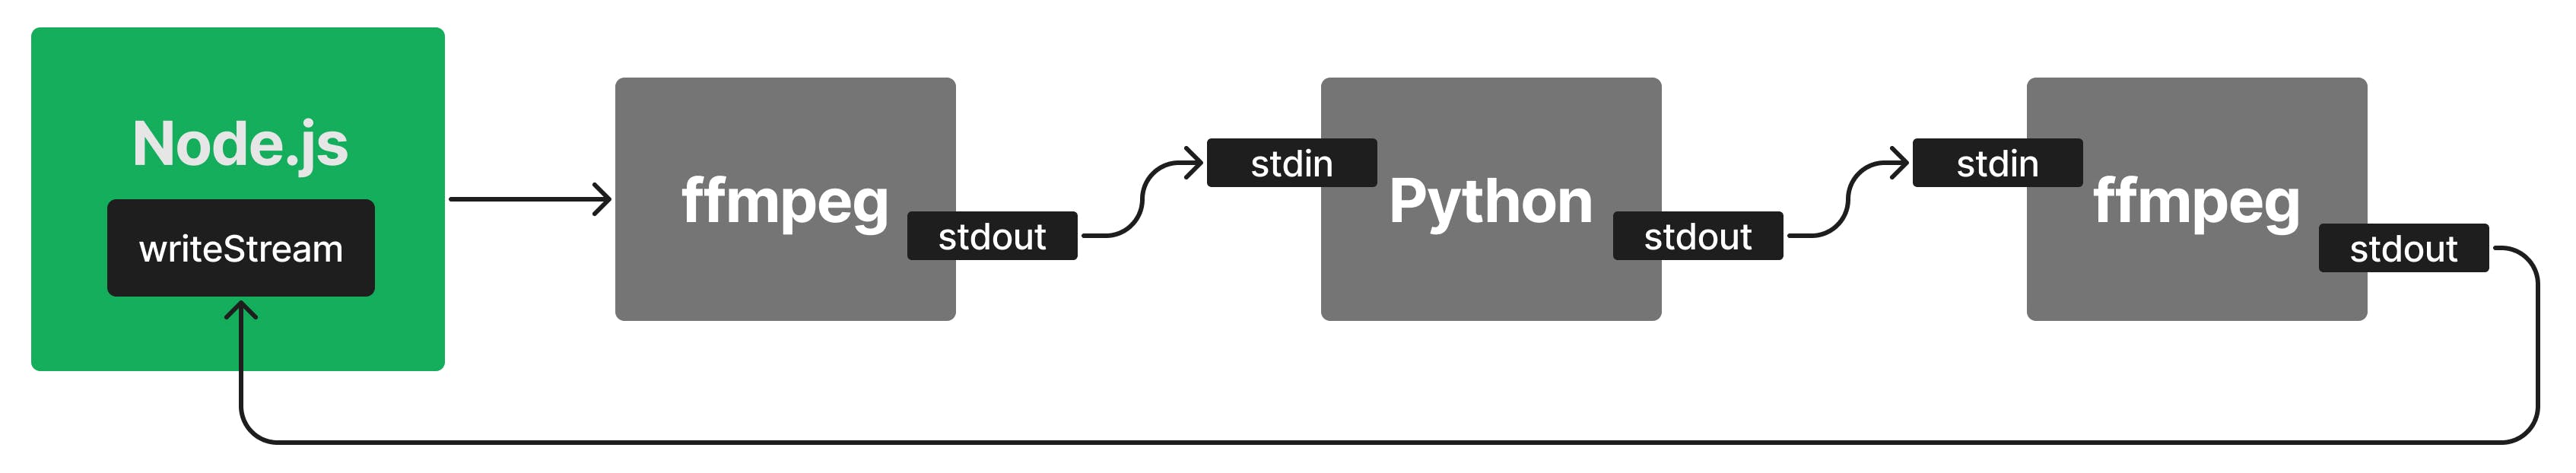 node.js의 스트림 API로 손쉽게 데이터 흐름을 구현할 수 있습니다.